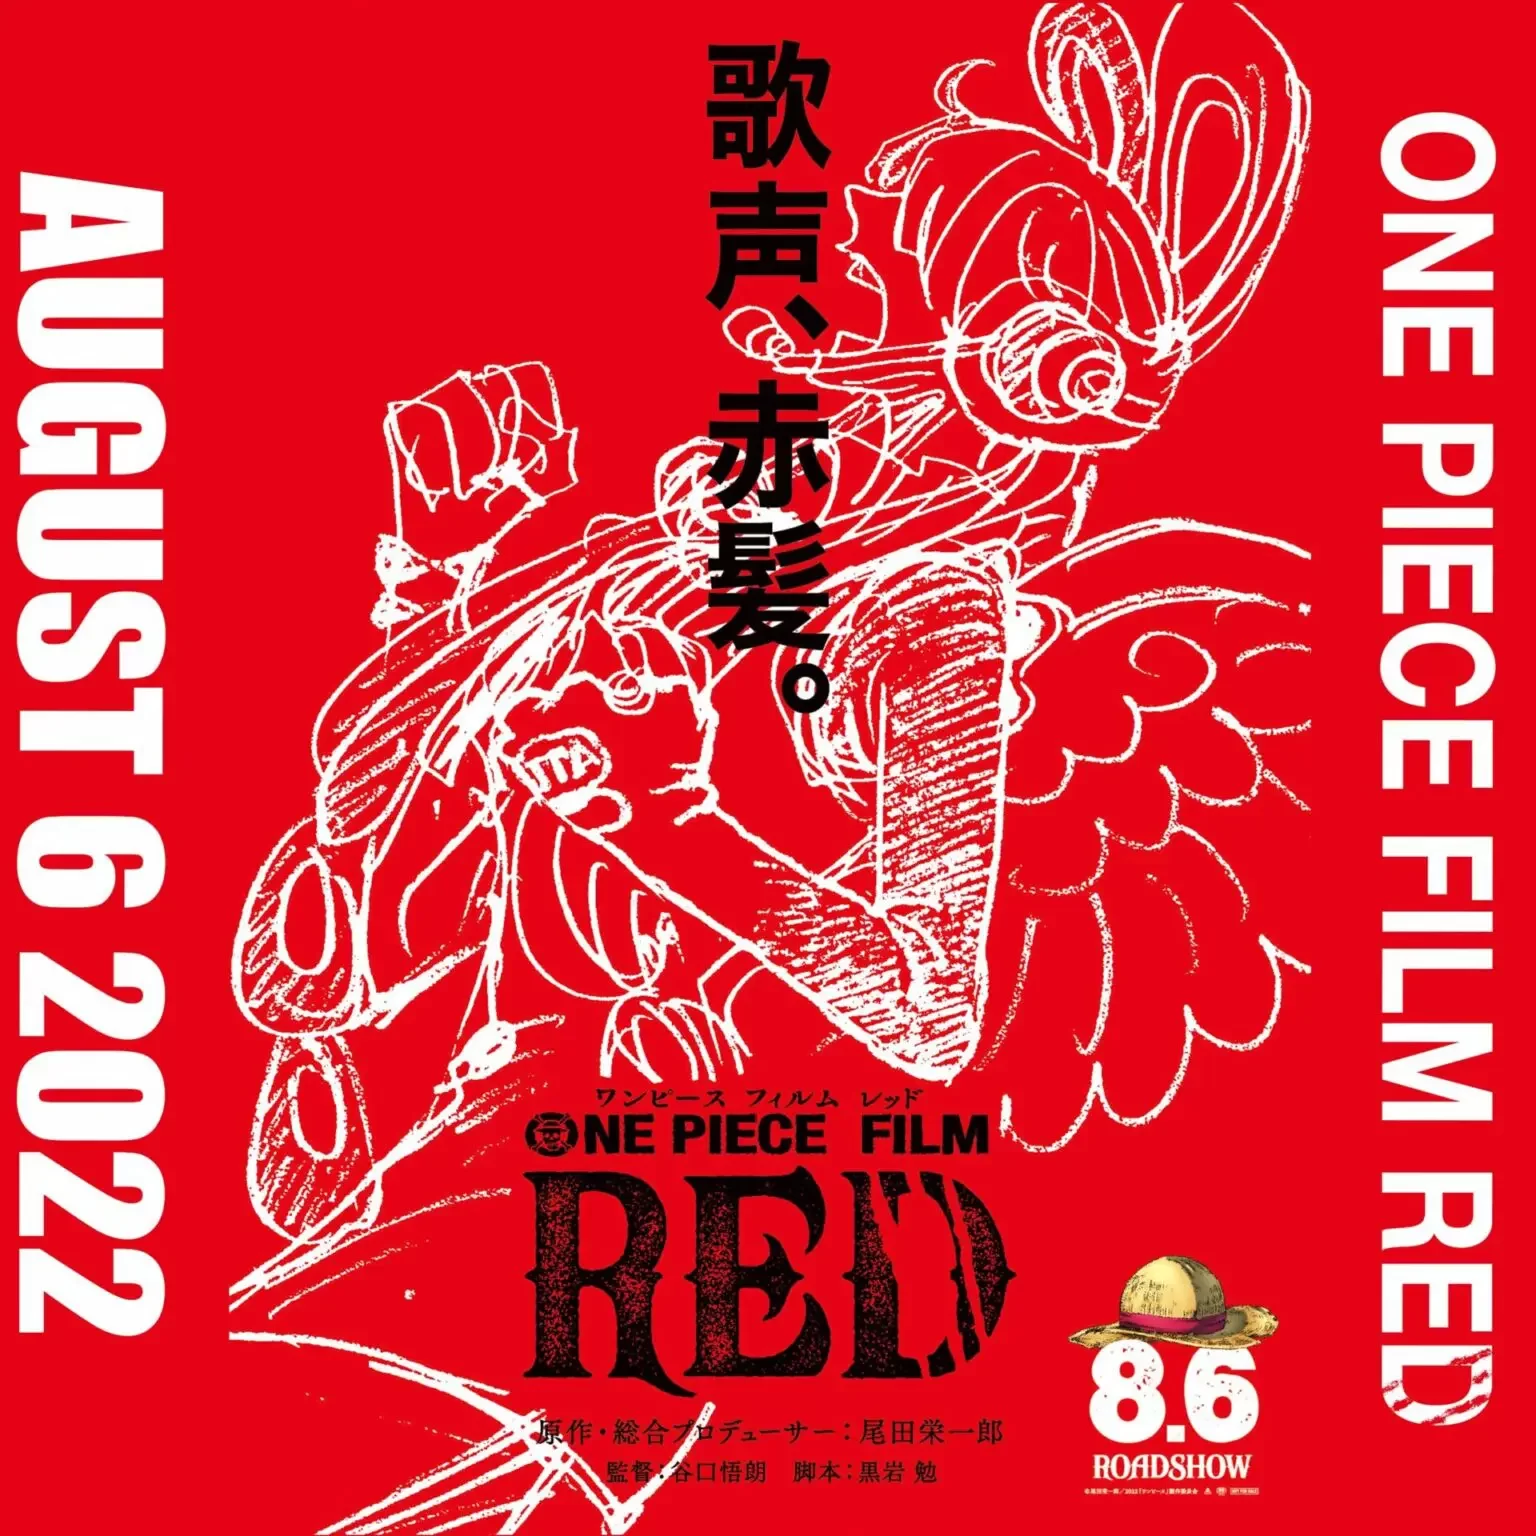 One Piece Film Red ワンピース フィルムレッド 映画レビュー ネタバレなし カイバくんの映画選び Com